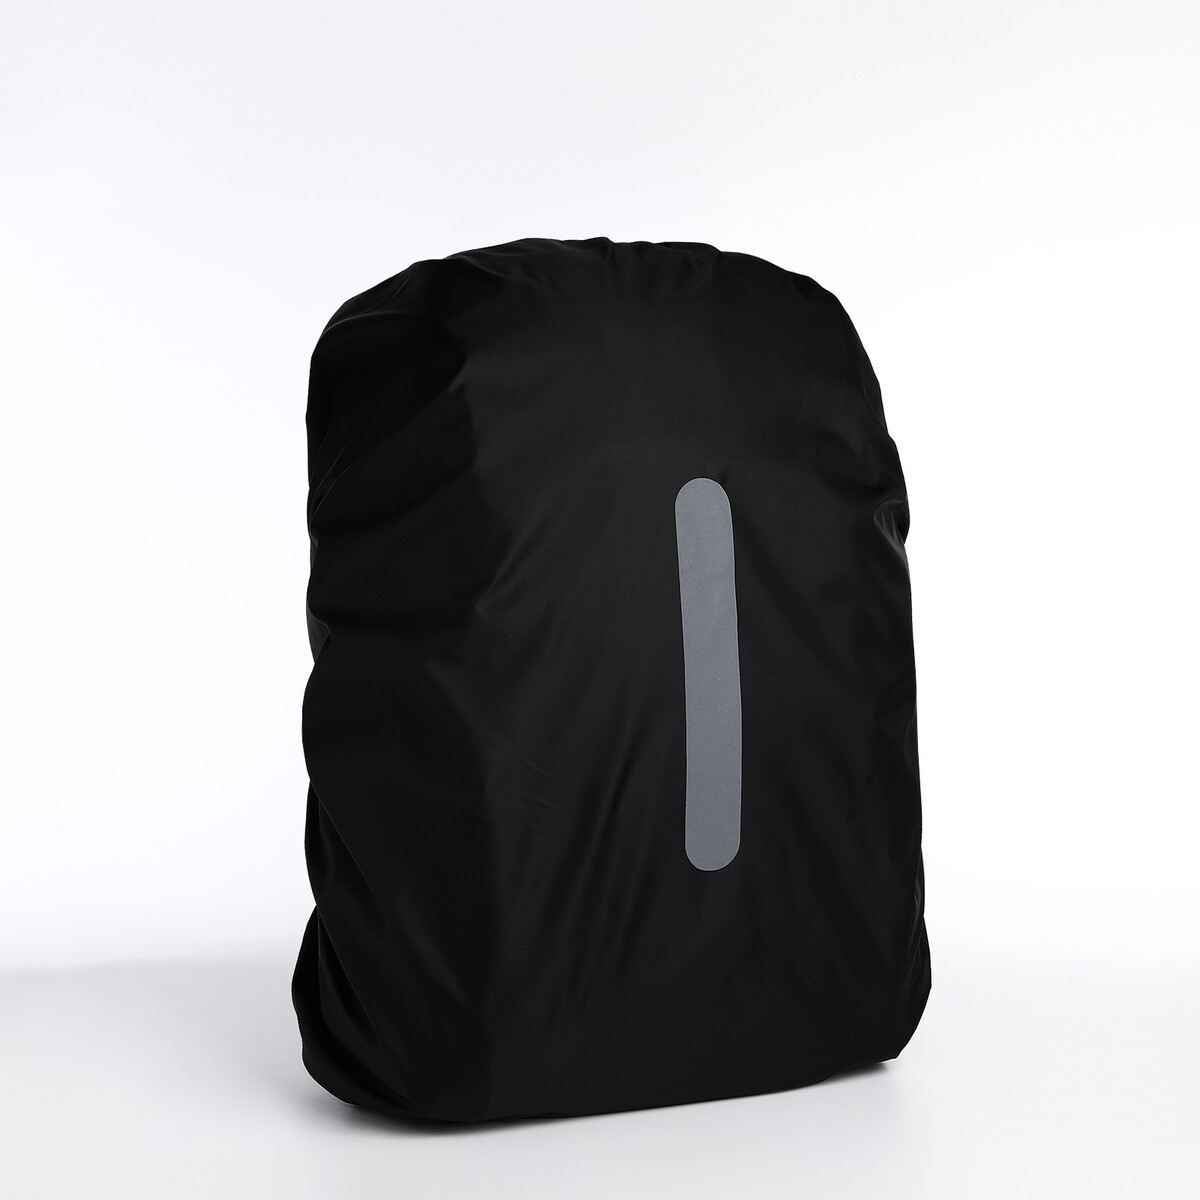 Чехол для рюкзака водоотталкивающий, 45 л, светоотражающая полоса, цвет черный чехол для рюкзака водоотталкивающий 45 л светоотражающая полоса